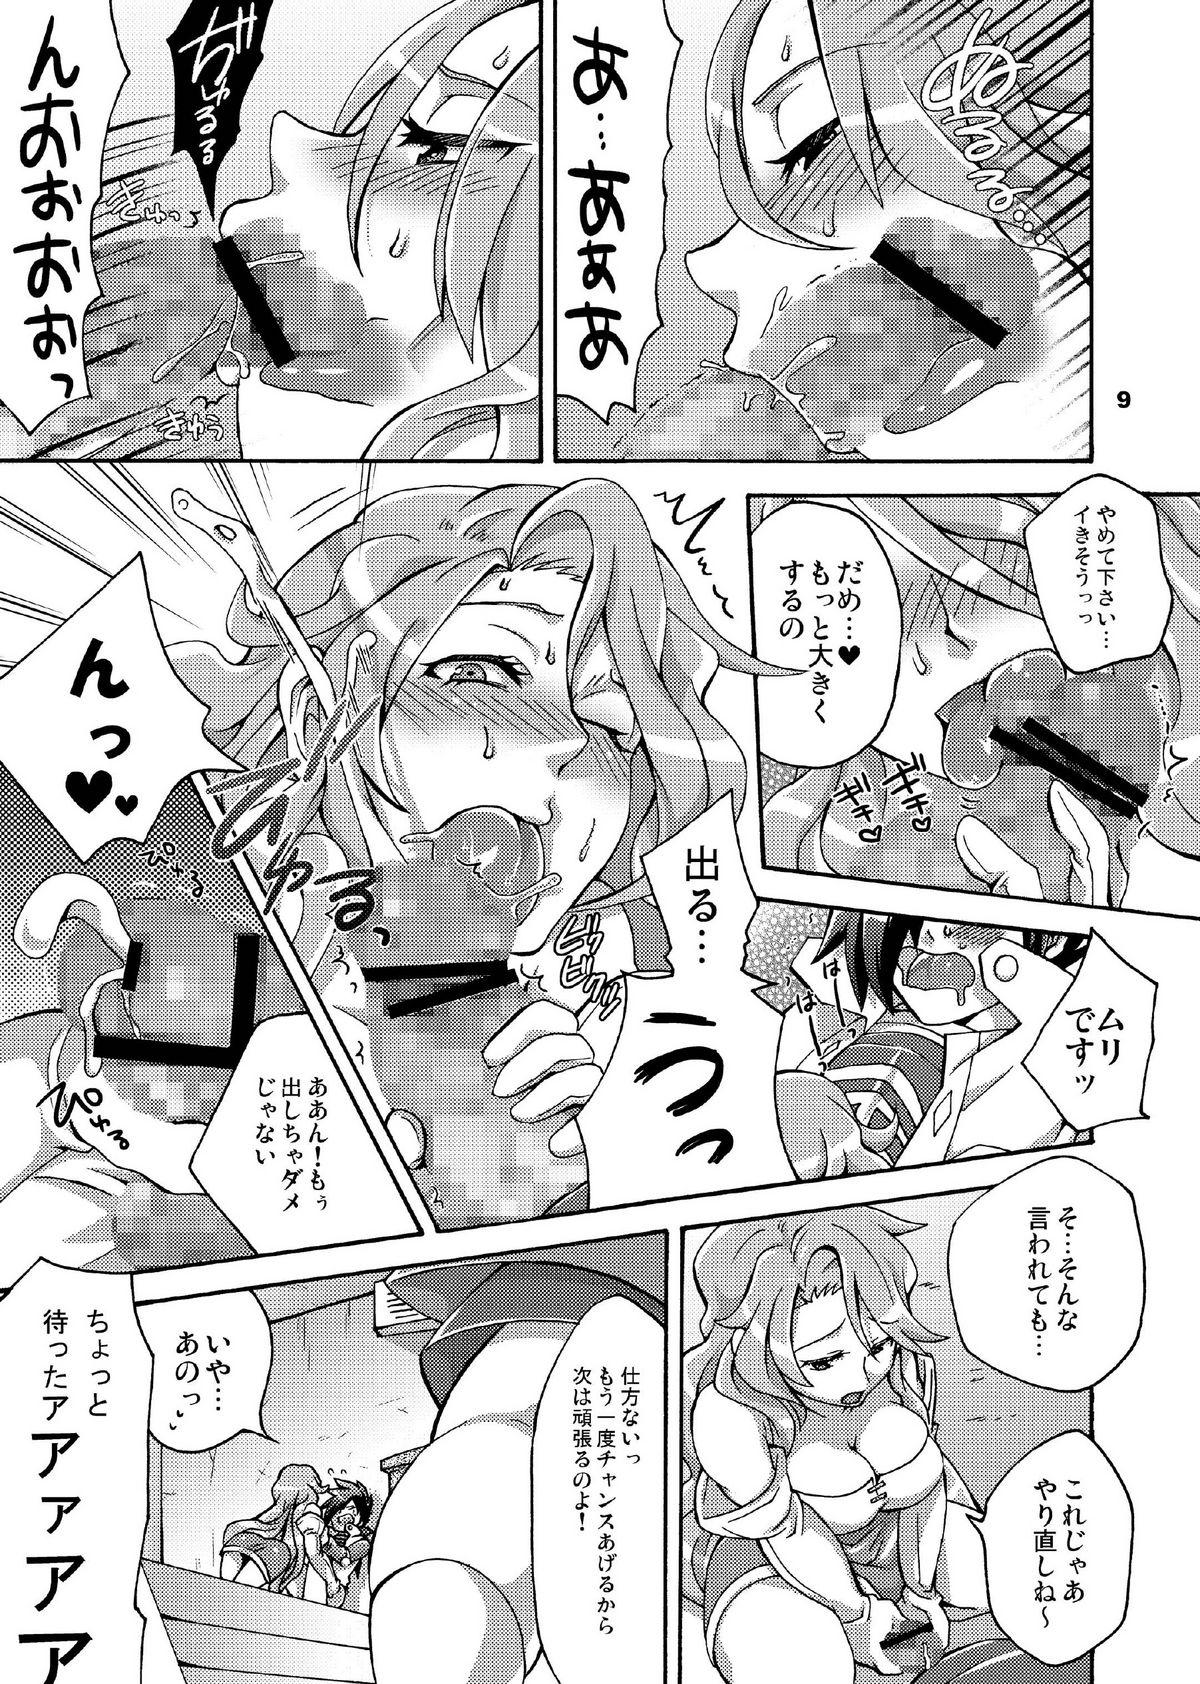 Cogida Triple Con Back - Shin megami tensei Screaming - Page 9